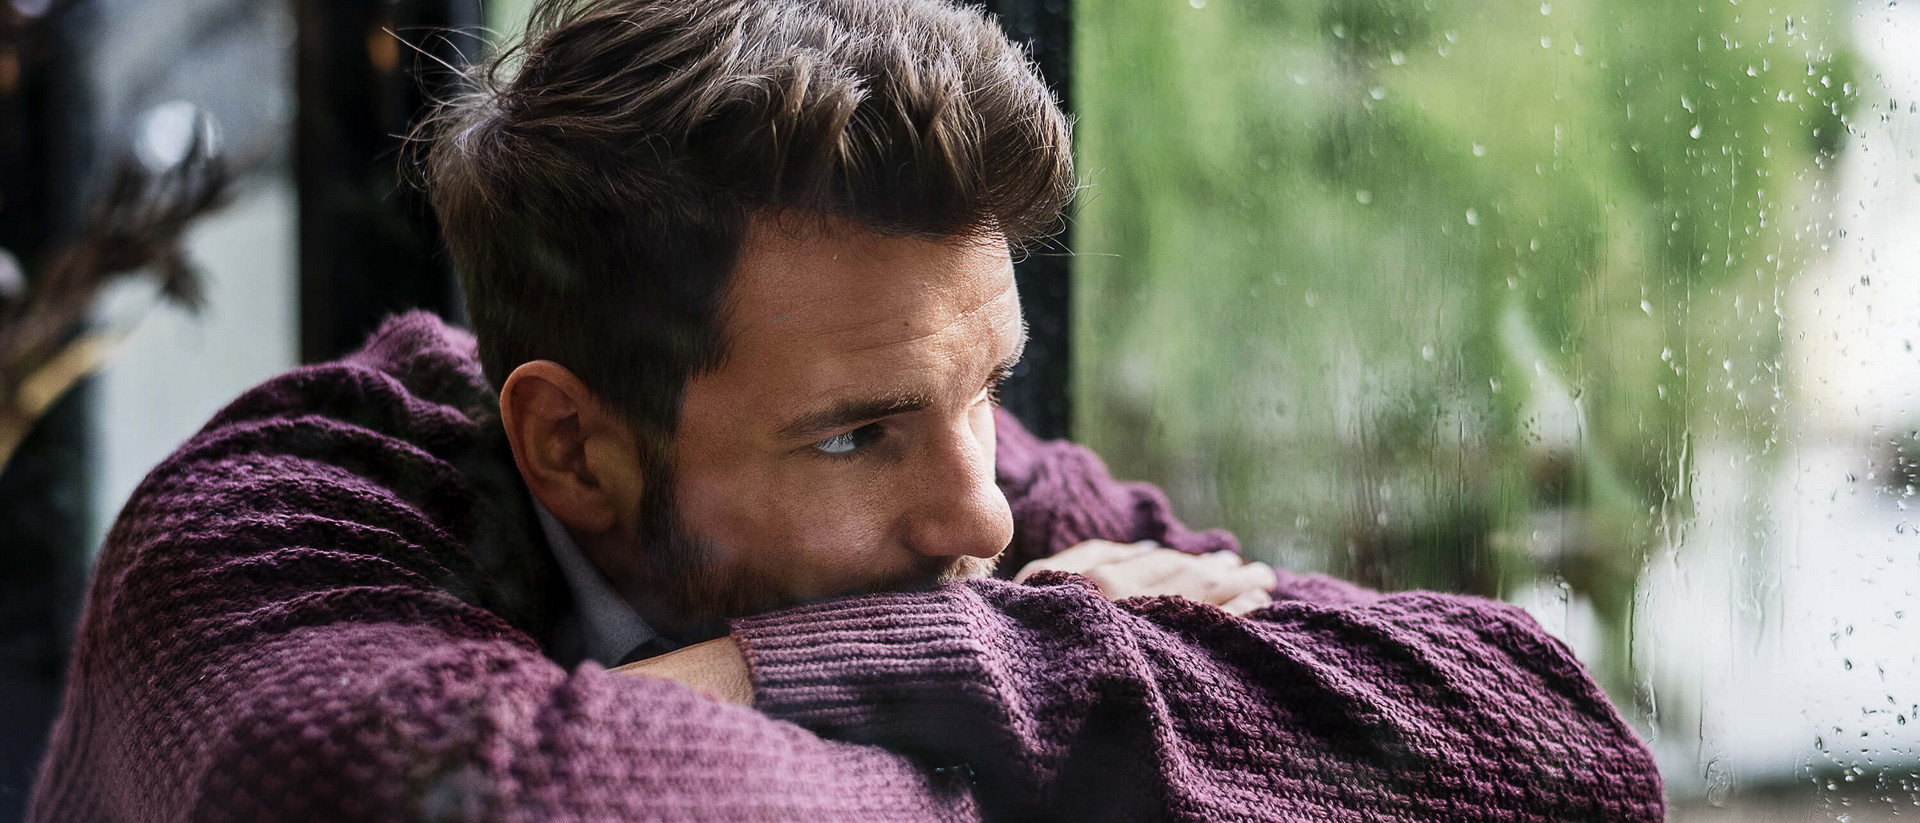 Ein junger Mann hat den Kopf auf die verschränkten Arme gelegt und schaut gedankenverloren durch ein regennasses Fenster in die Ferne.